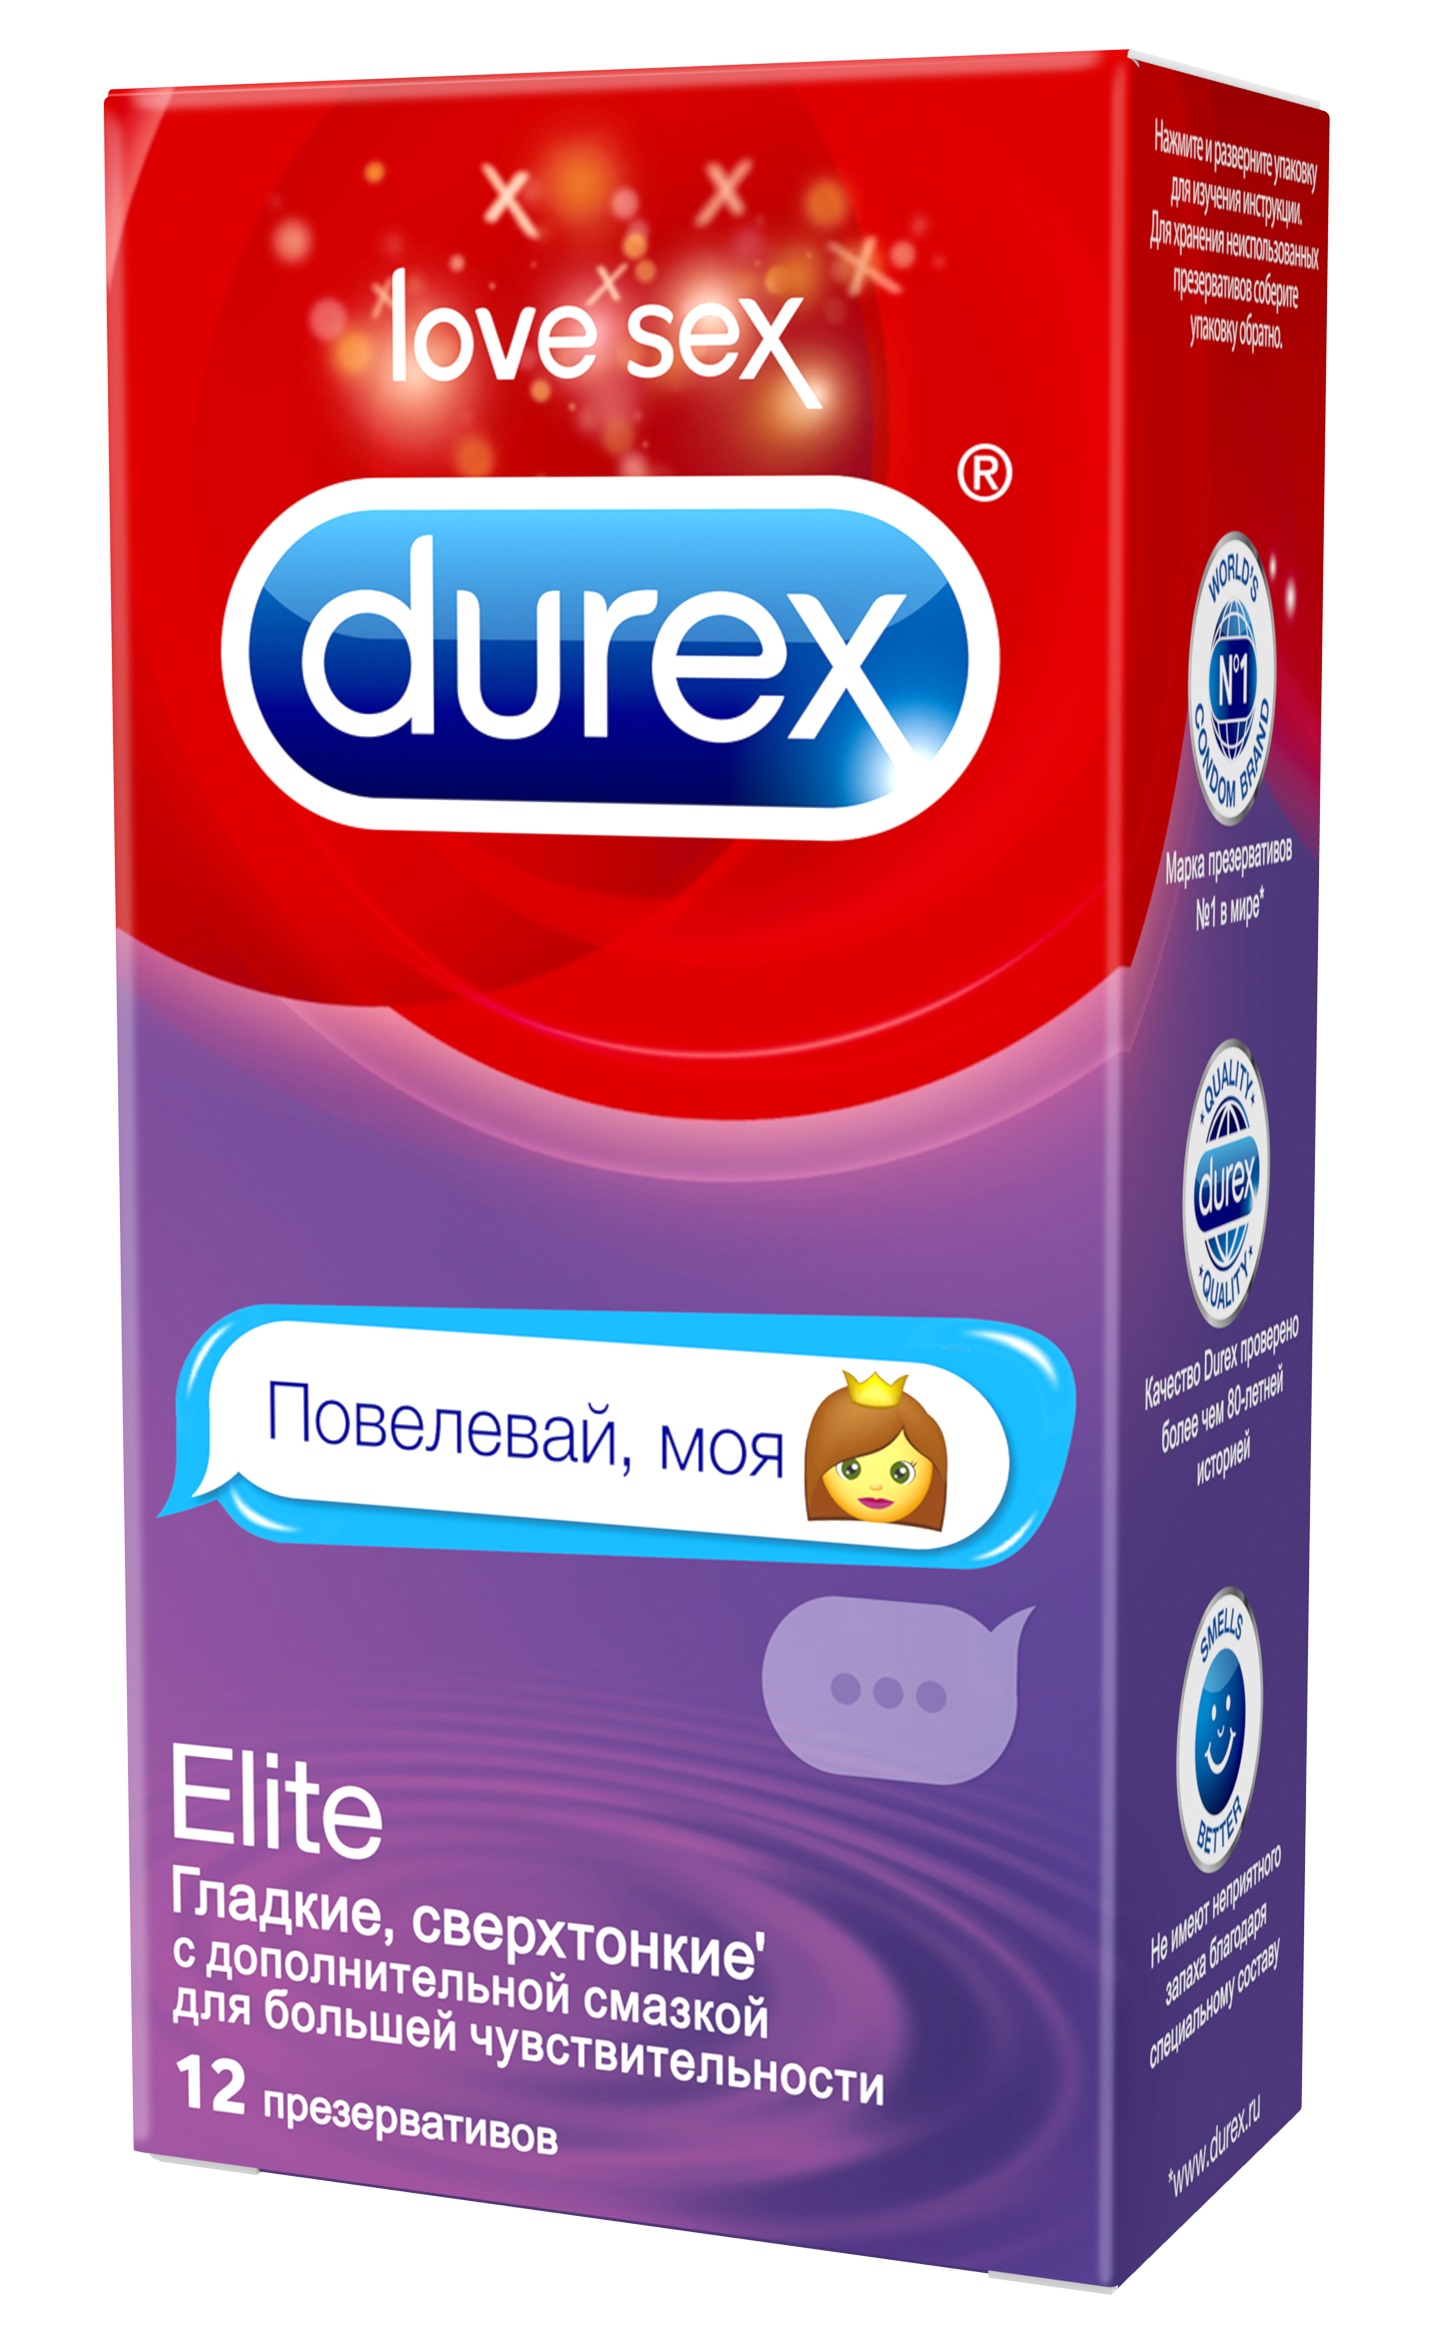 Durex Elite Emoji Сверхтонкие презервативы с дополнительной смазкой для большей чувствительности (дизайн эмодзи), 12 шт